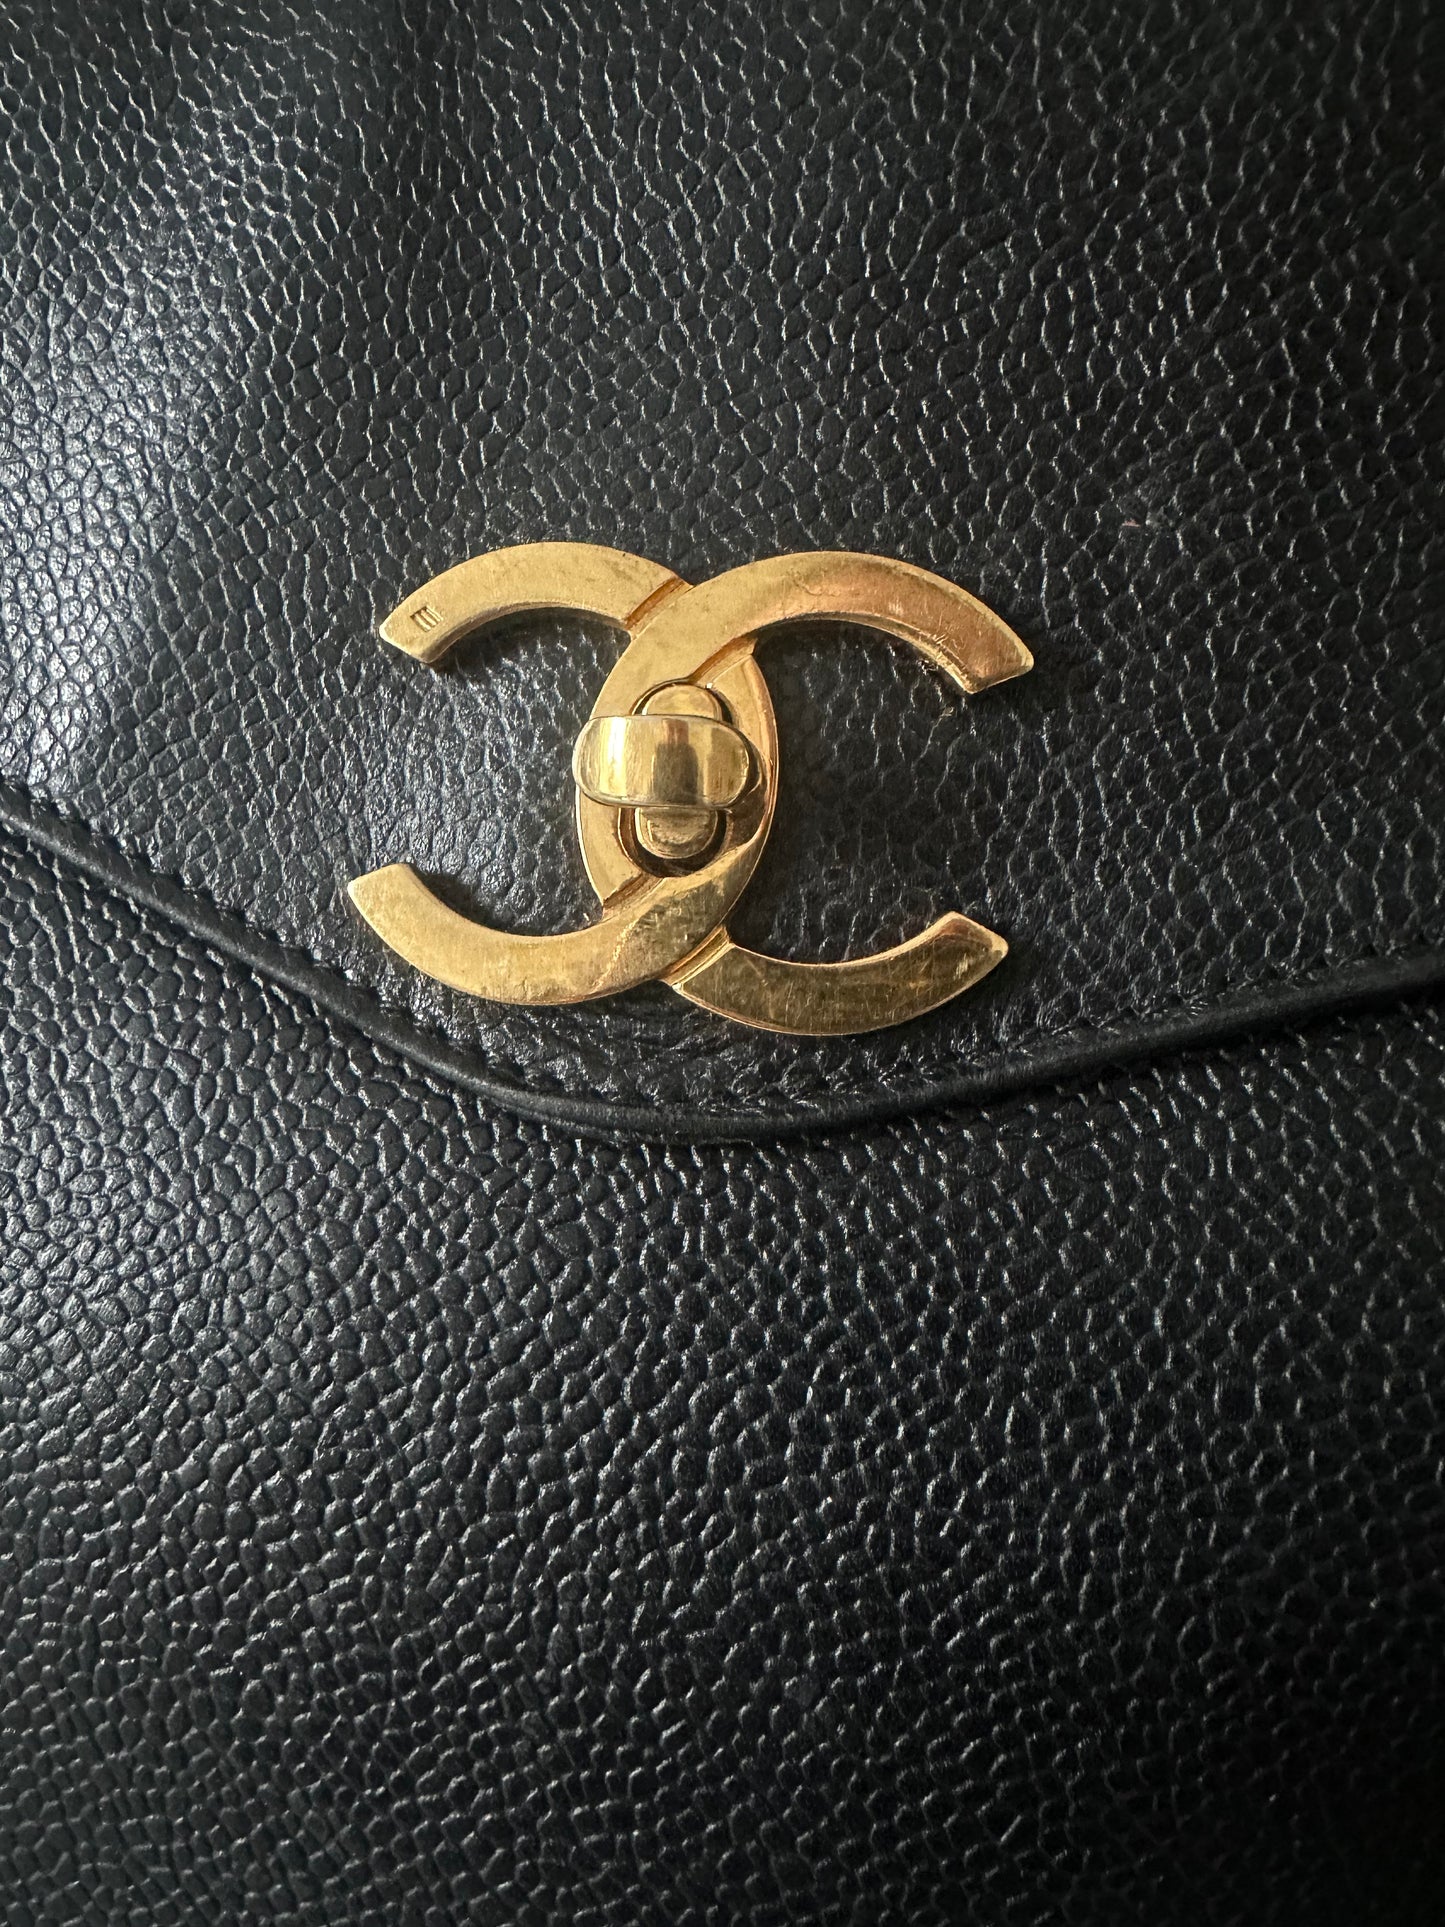 Chanel vintage shoulder bag